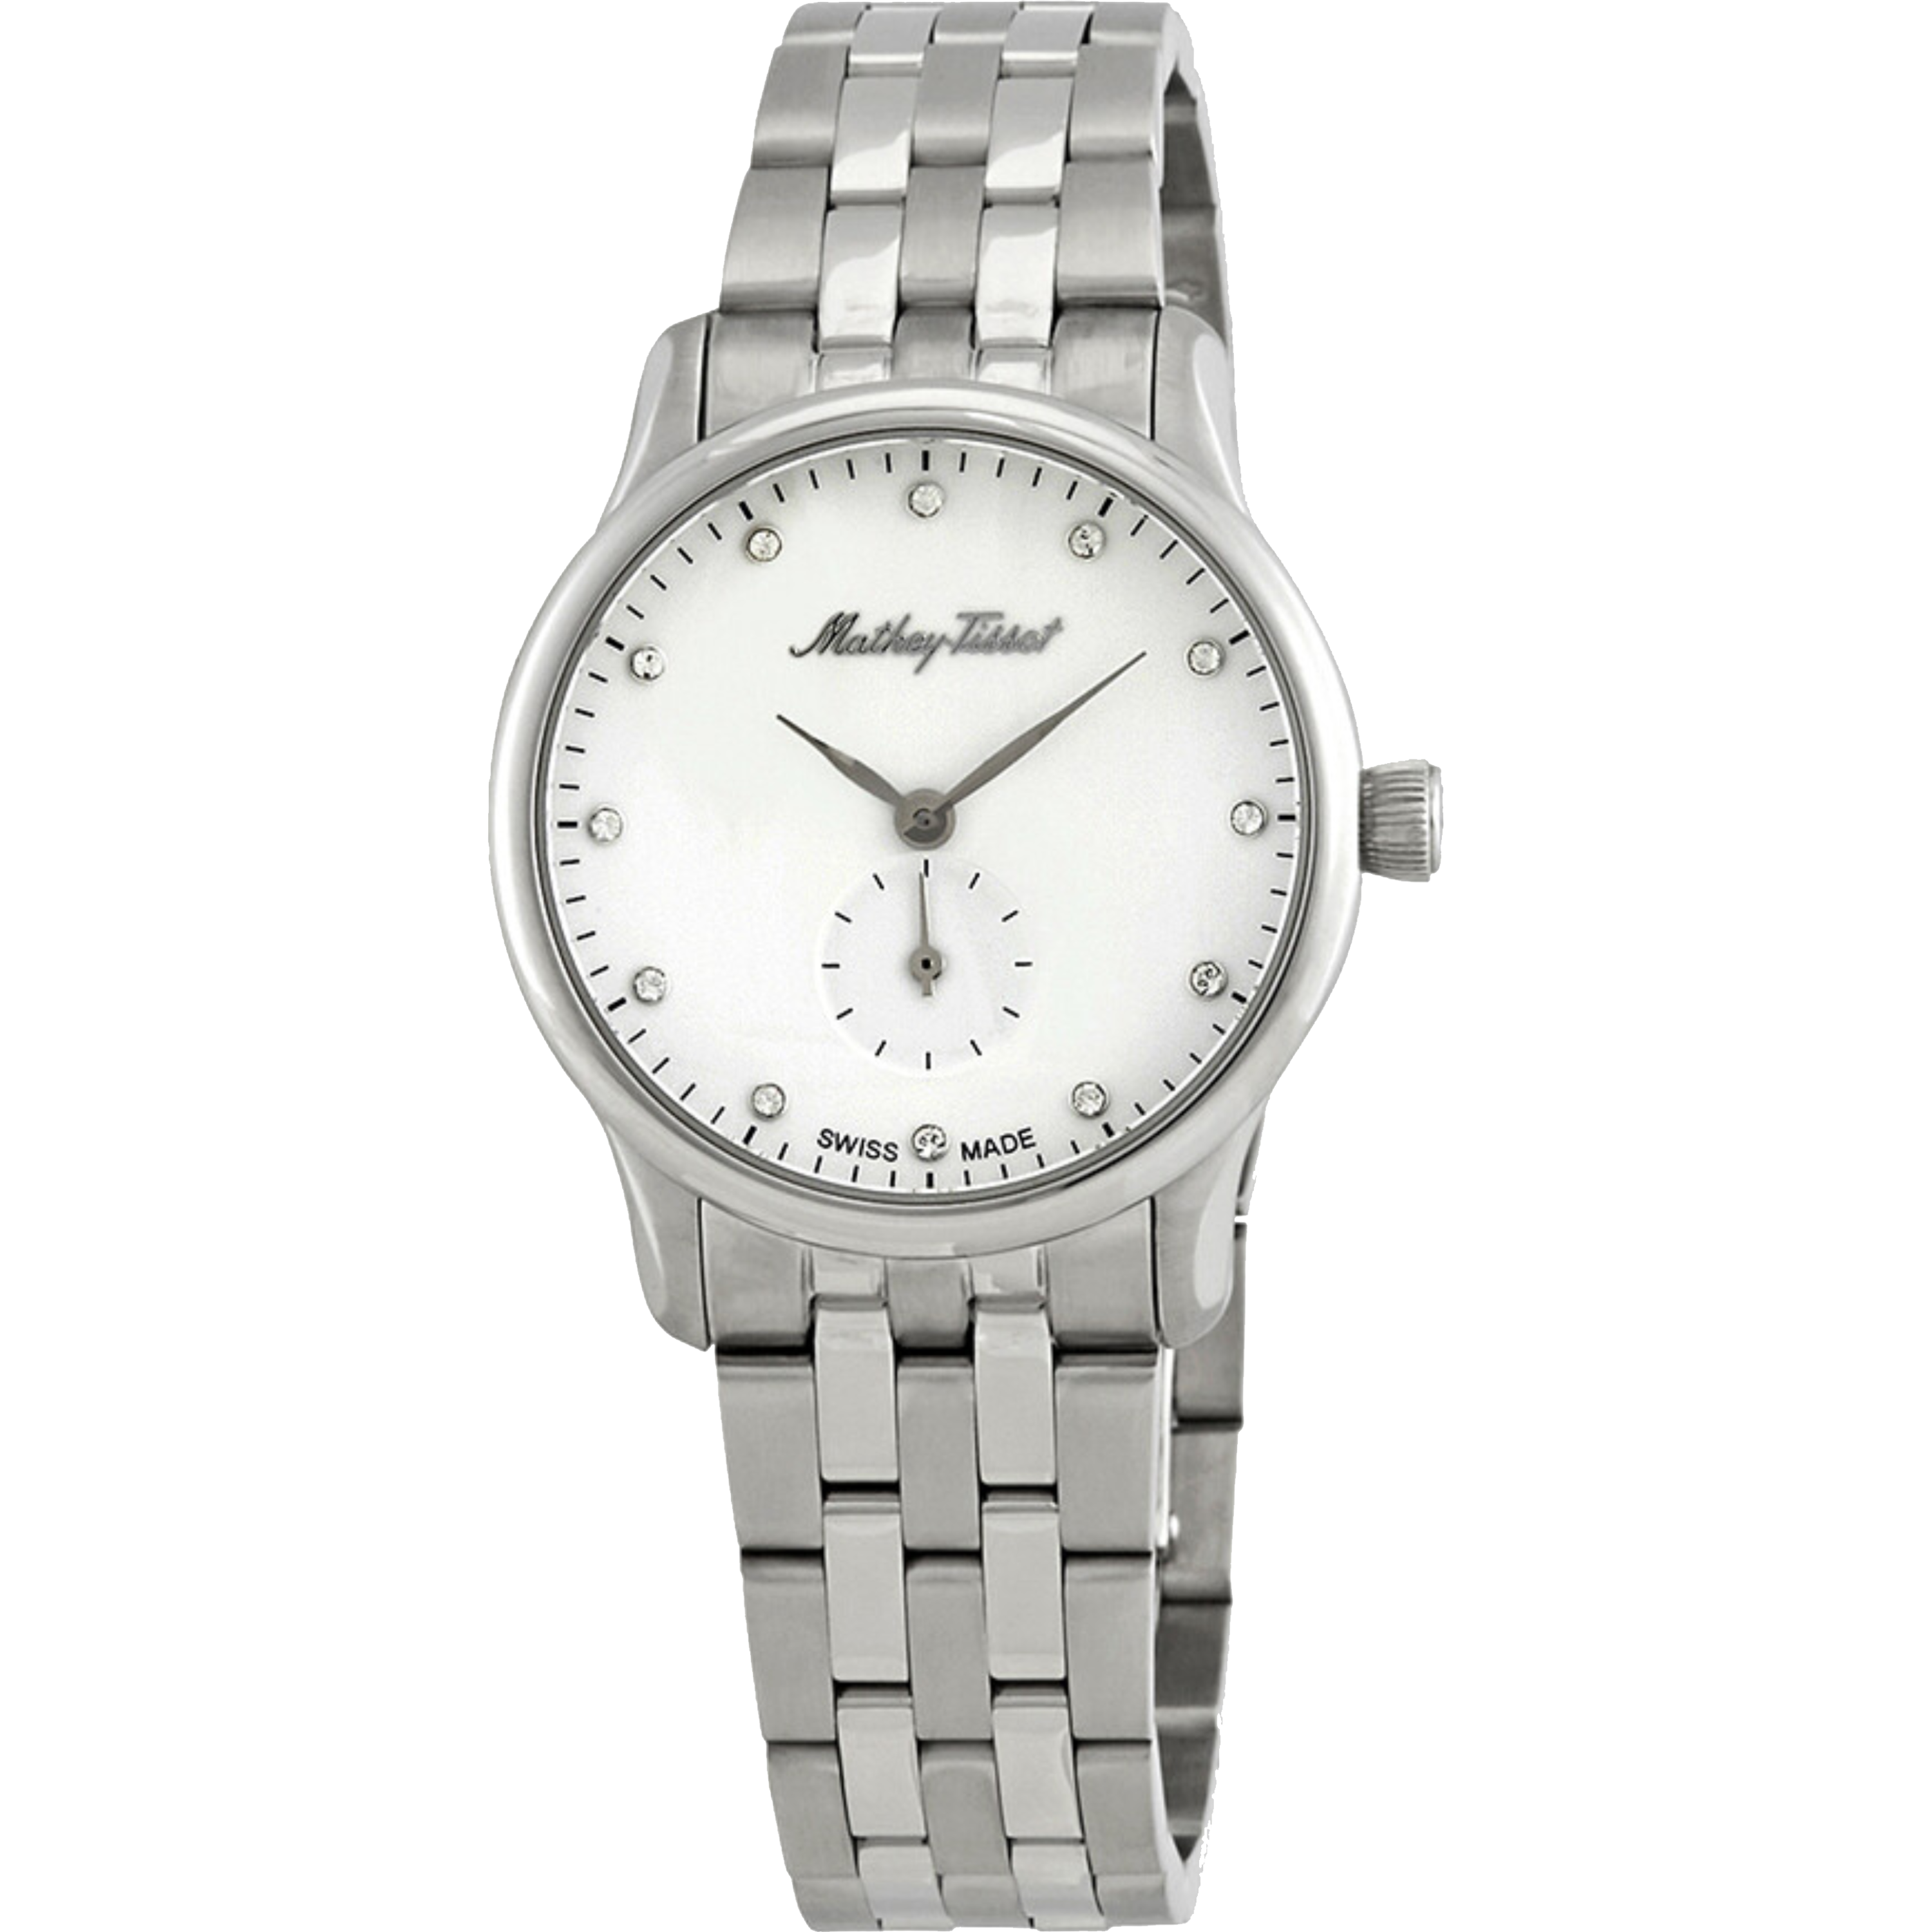 שעון יד לאישה Mathey Tissot D1886MAI 32mm צבע כסף/זכוכית ספיר - אחריות לשנה ע"י היבואן